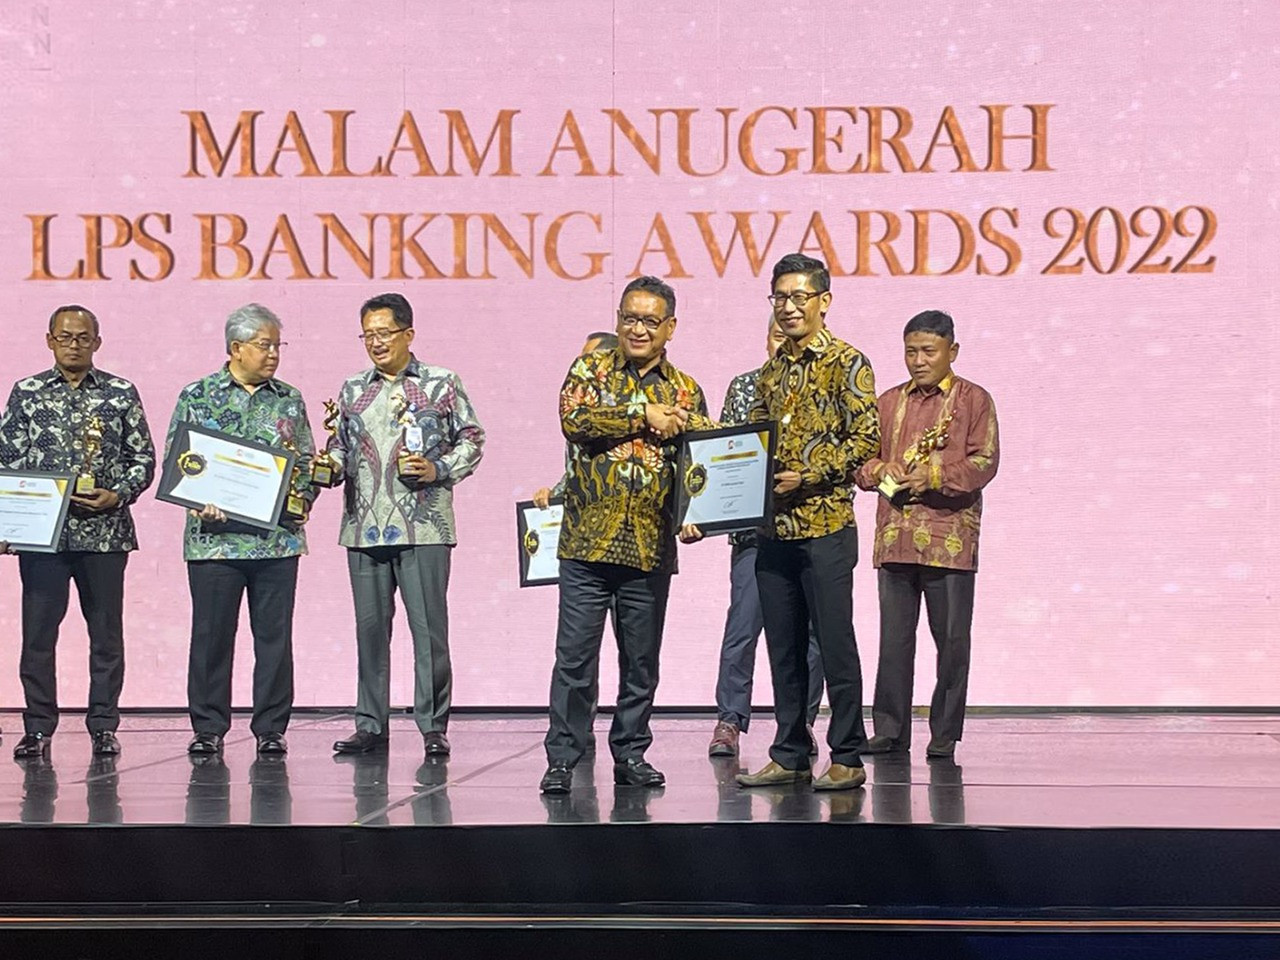 Bank Lestari Bali (BPR), Raih Predikat Bank Teraktif dalam Meningkatkan Literasi Keuangan Masyarakat dalam LPS Banking Award 2022